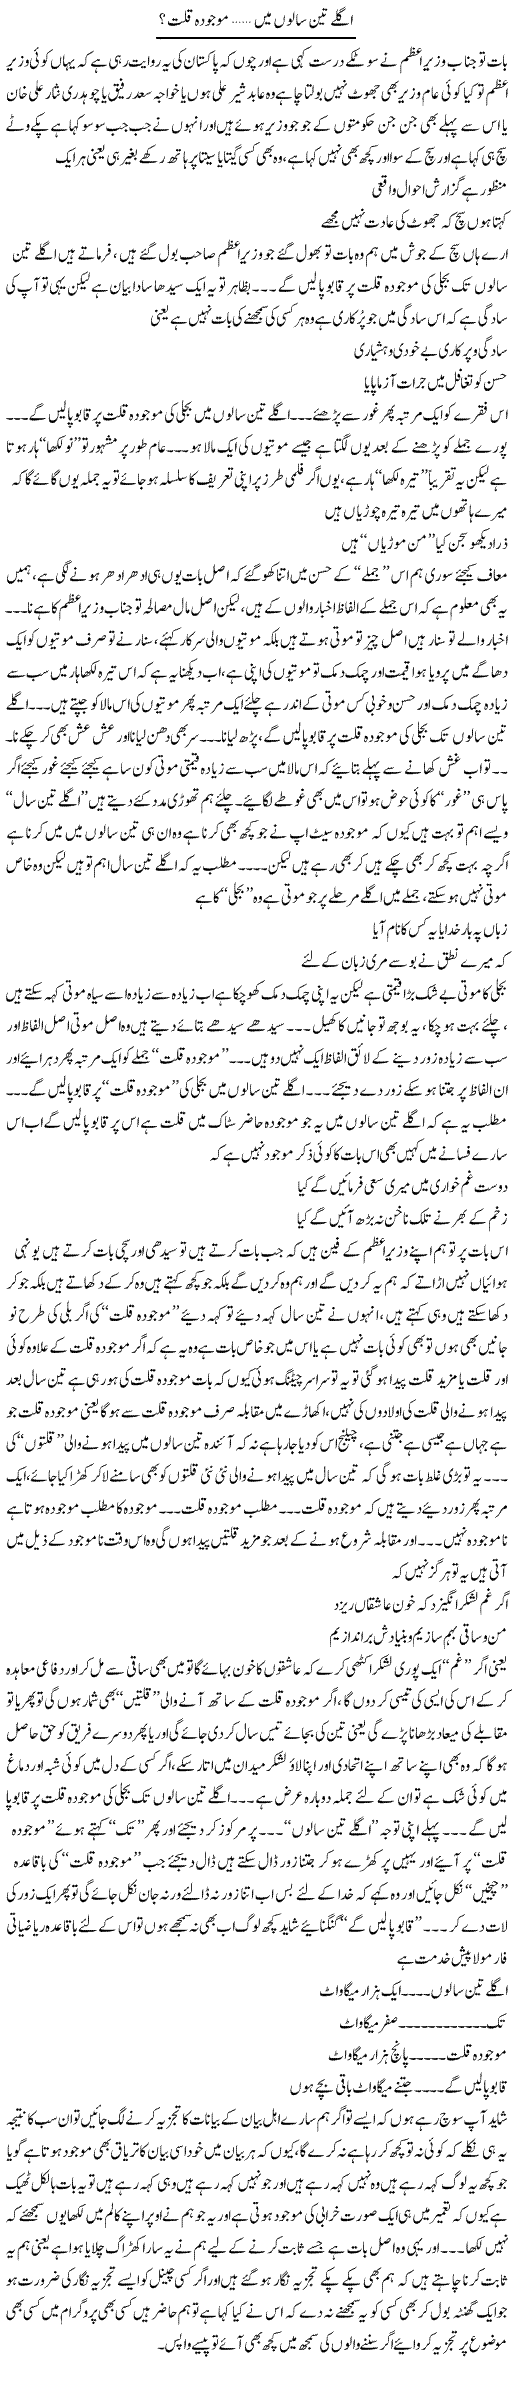 Agle Teen Saalo Mai Mojooda Killat | Saad Ullah Jan Barq | Daily Urdu Columns